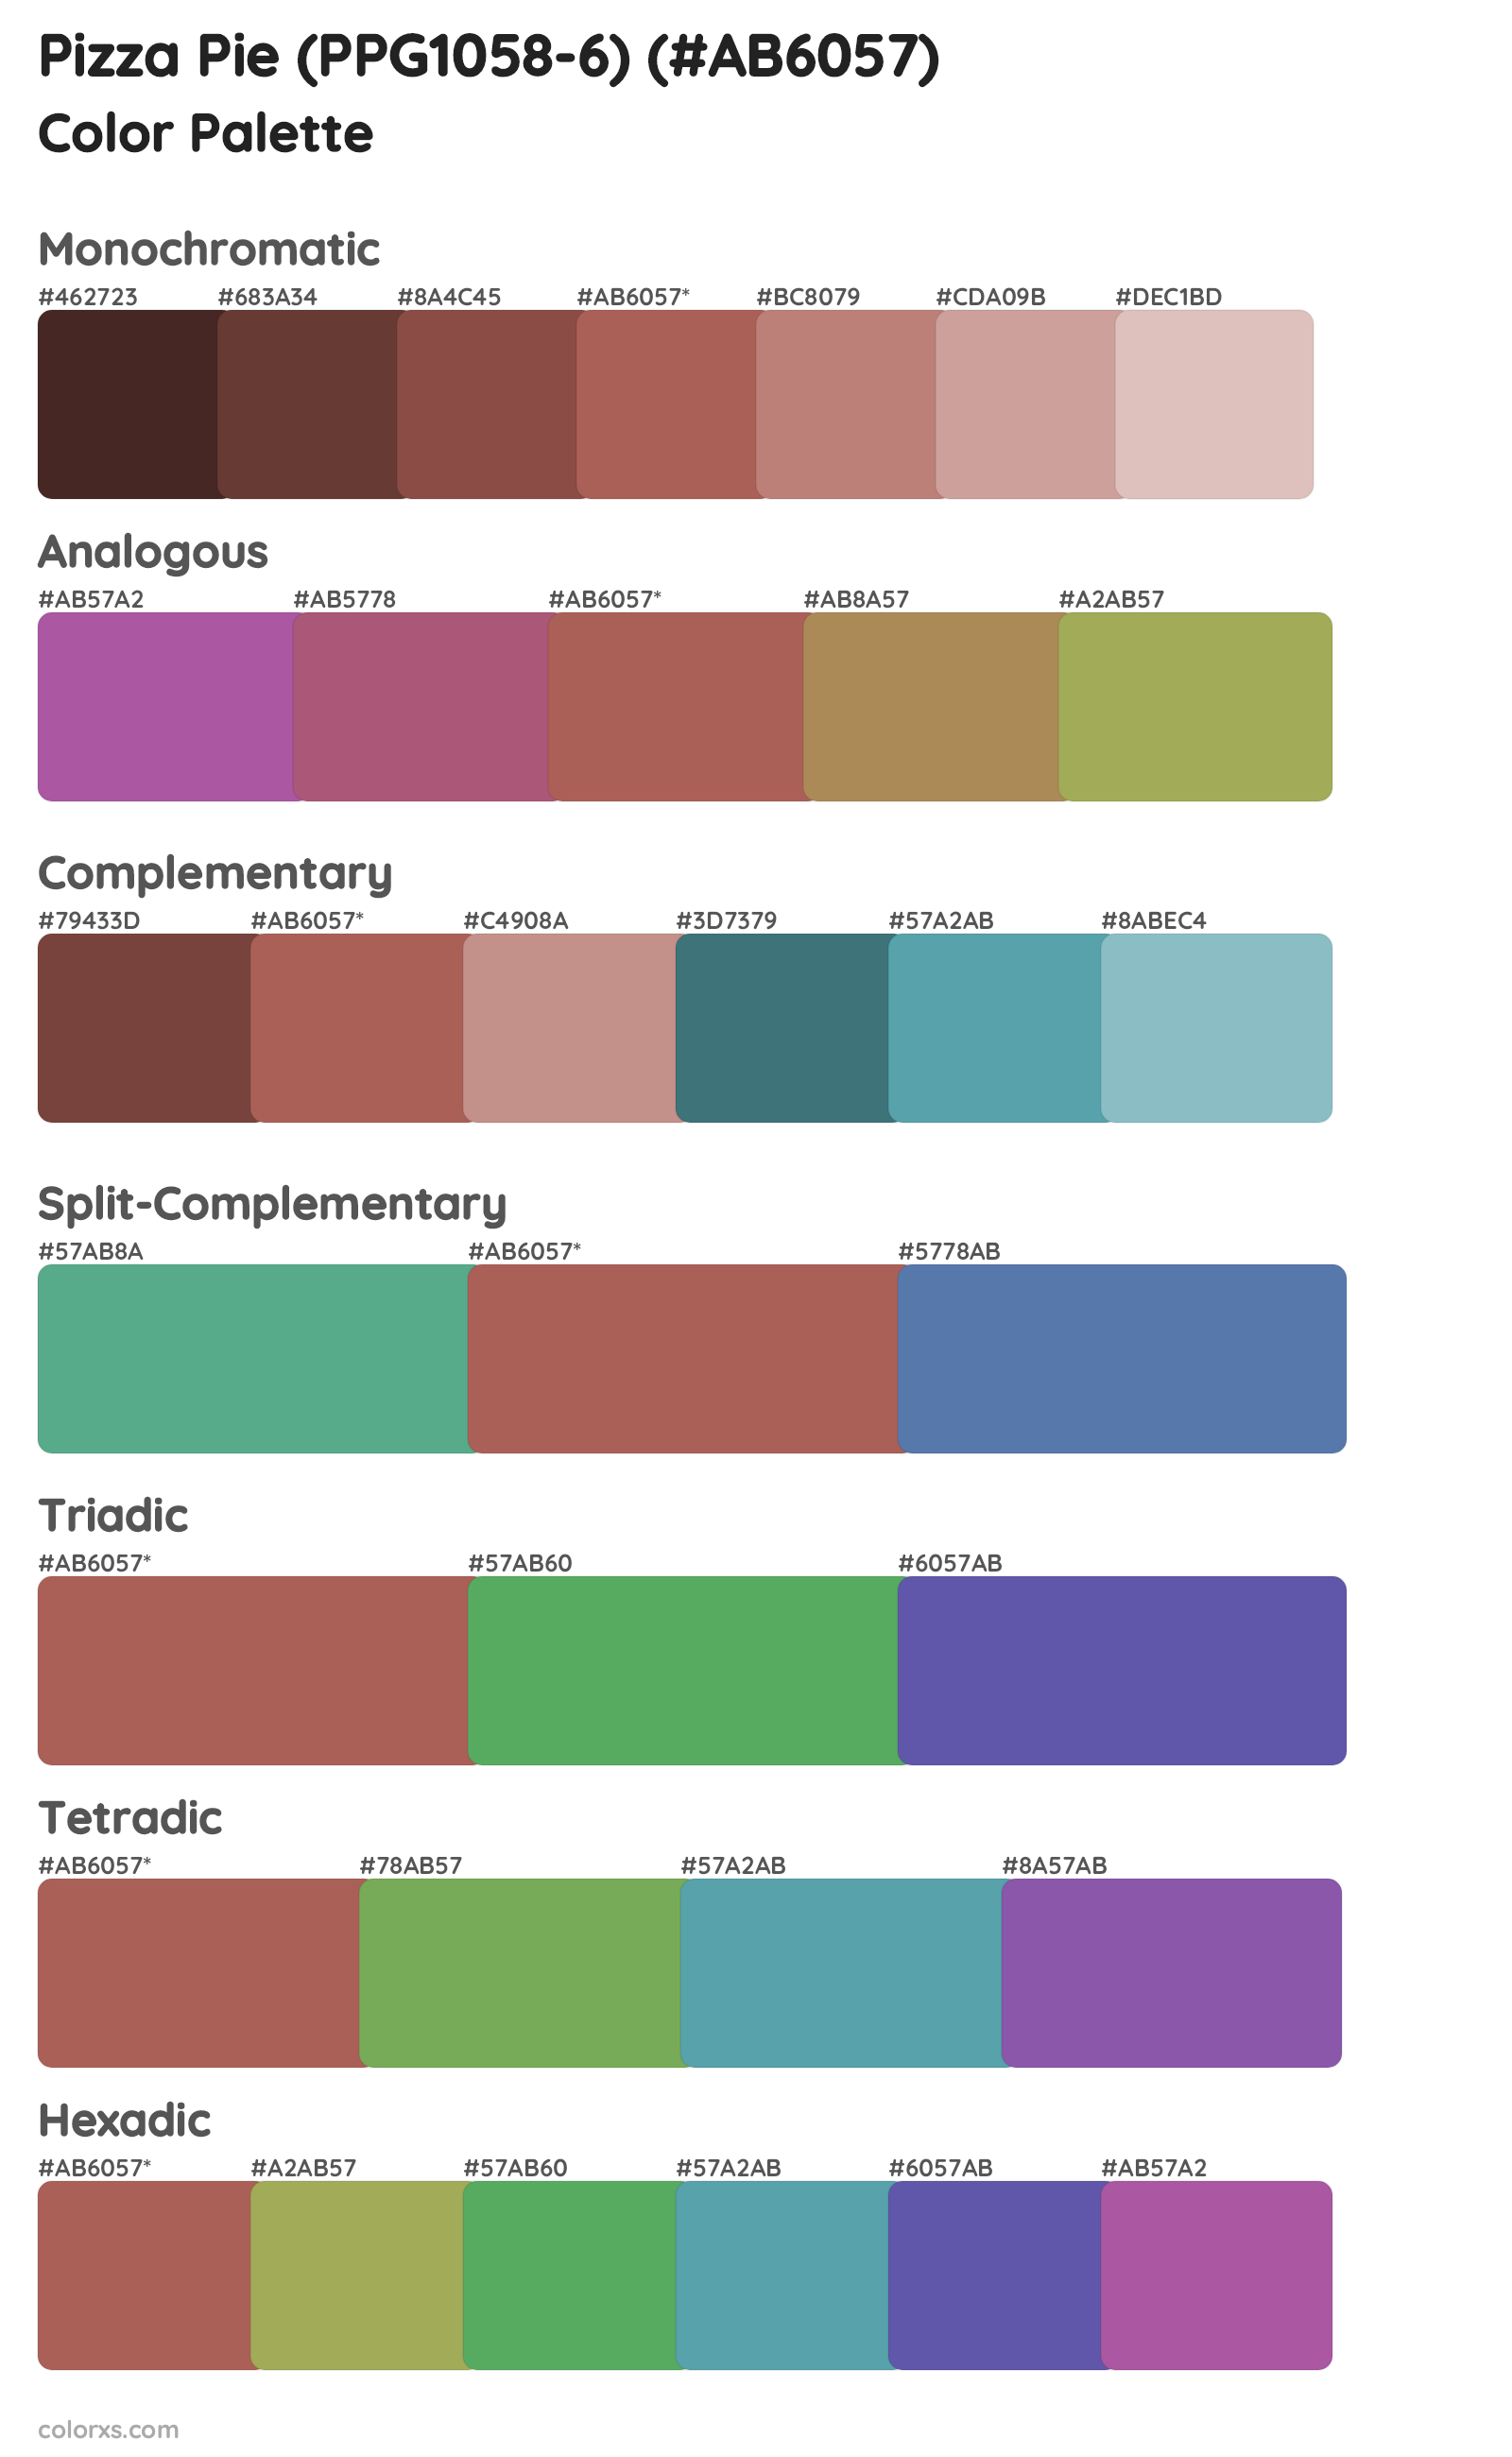 Pizza Pie (PPG1058-6) Color Scheme Palettes